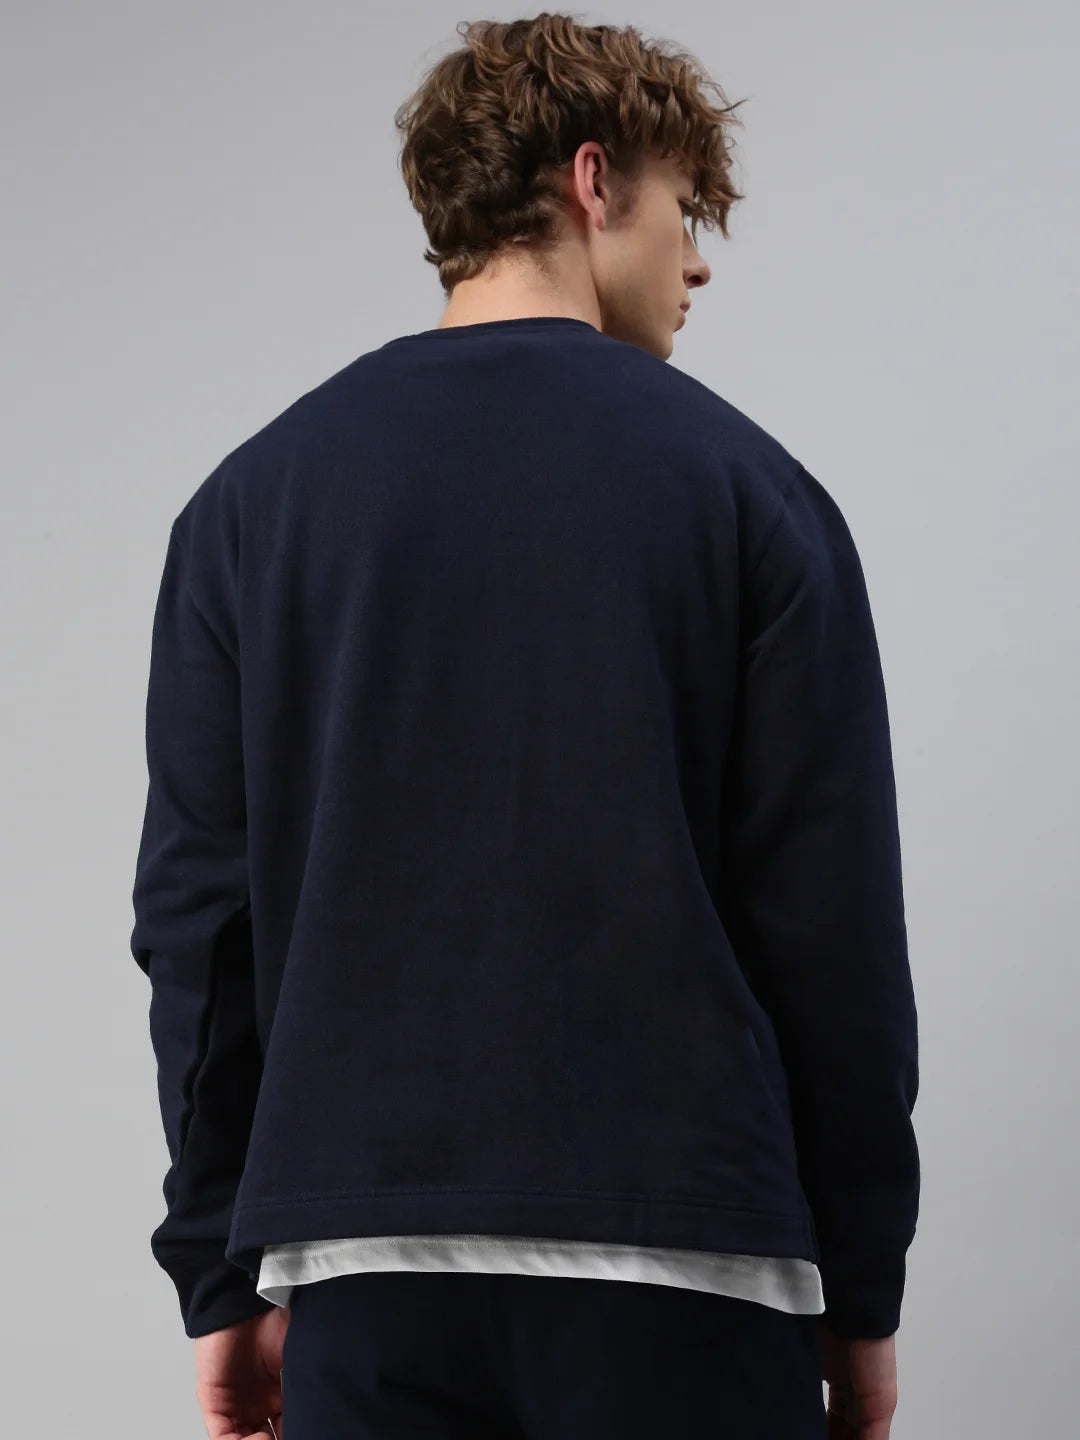 Homme-Stockholm-Coton-Polyester-Kasak-Sweatshirt-Blanc-Look-Shot